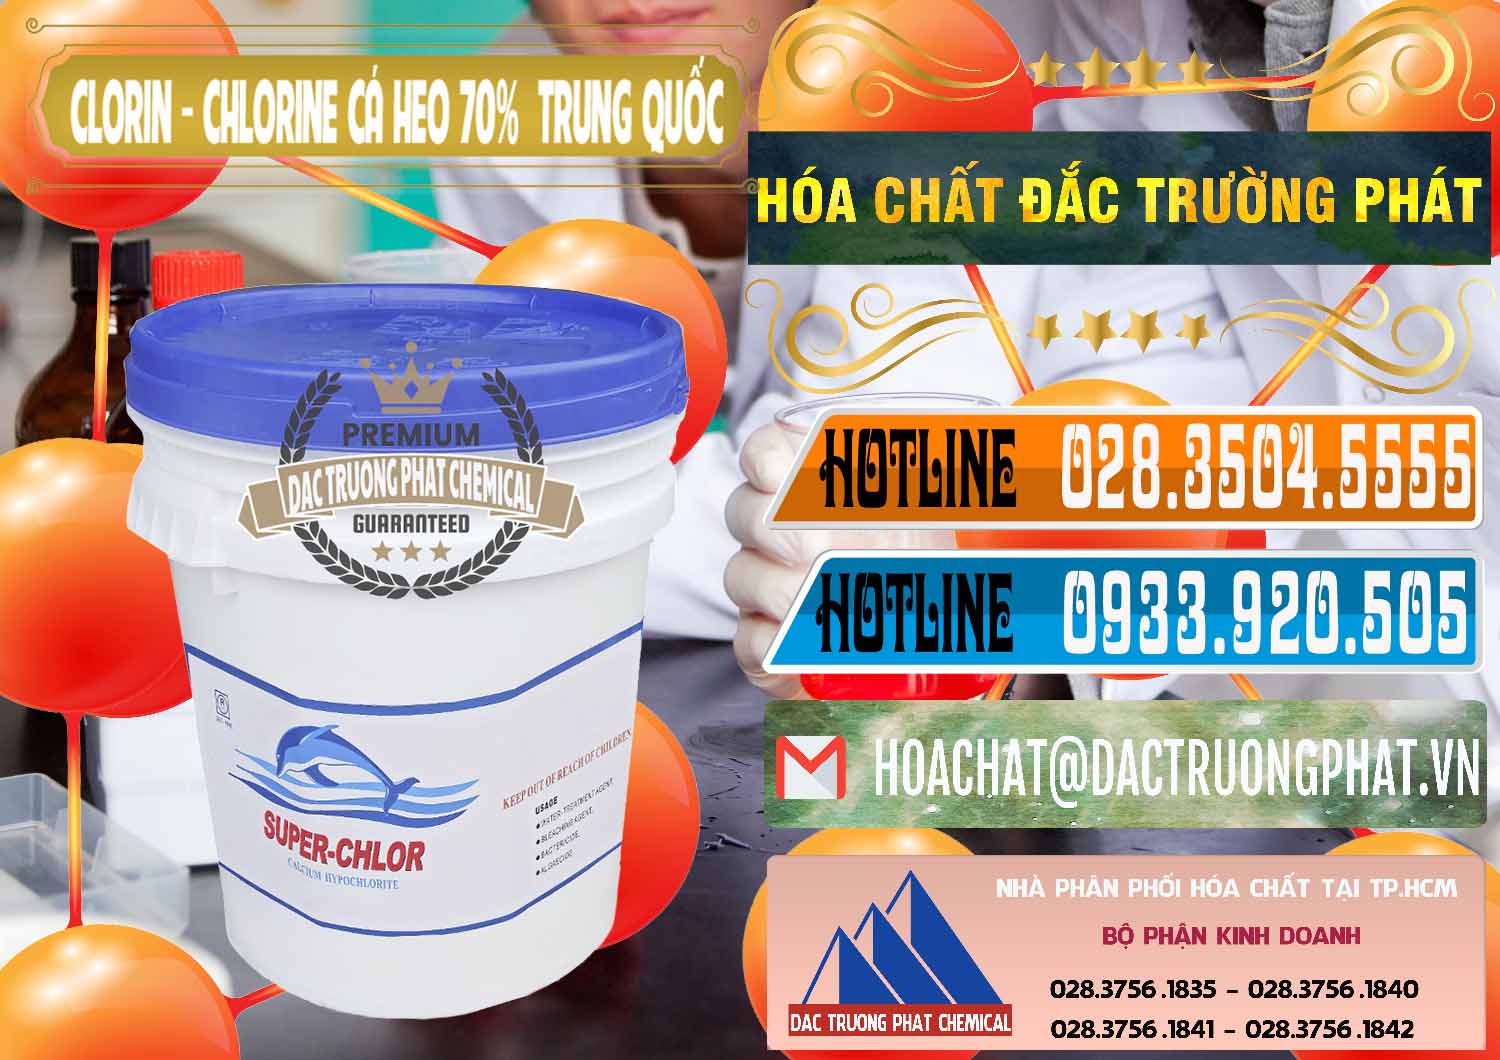 Bán & cung ứng Clorin - Chlorine Cá Heo 70% Super Chlor Nắp Xanh Trung Quốc China - 0209 - Cty chuyên cung ứng ( phân phối ) hóa chất tại TP.HCM - stmp.net